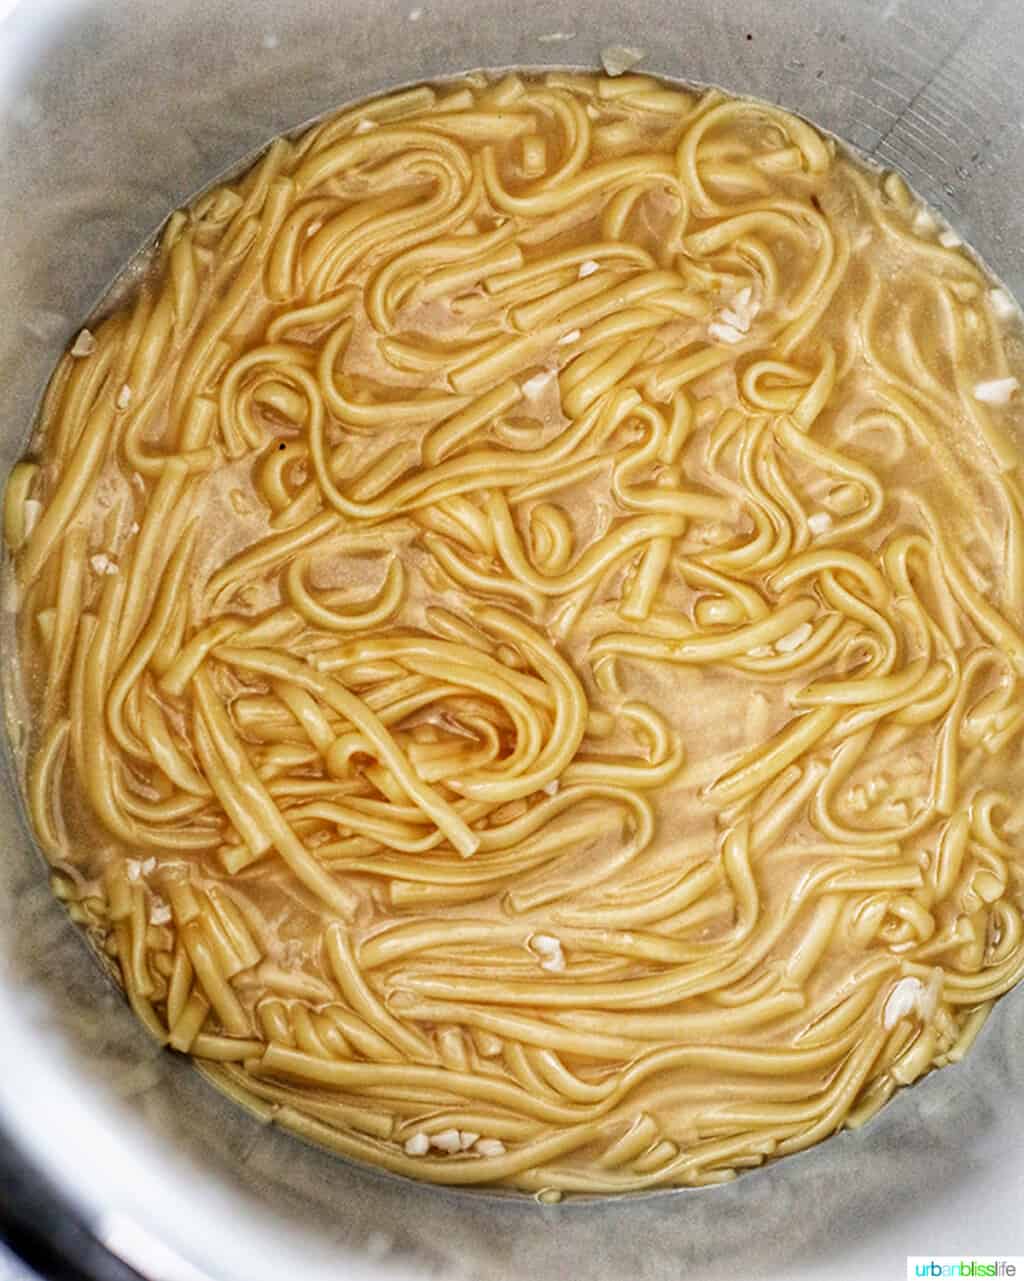 linguini noodles in the Ninja Foodi